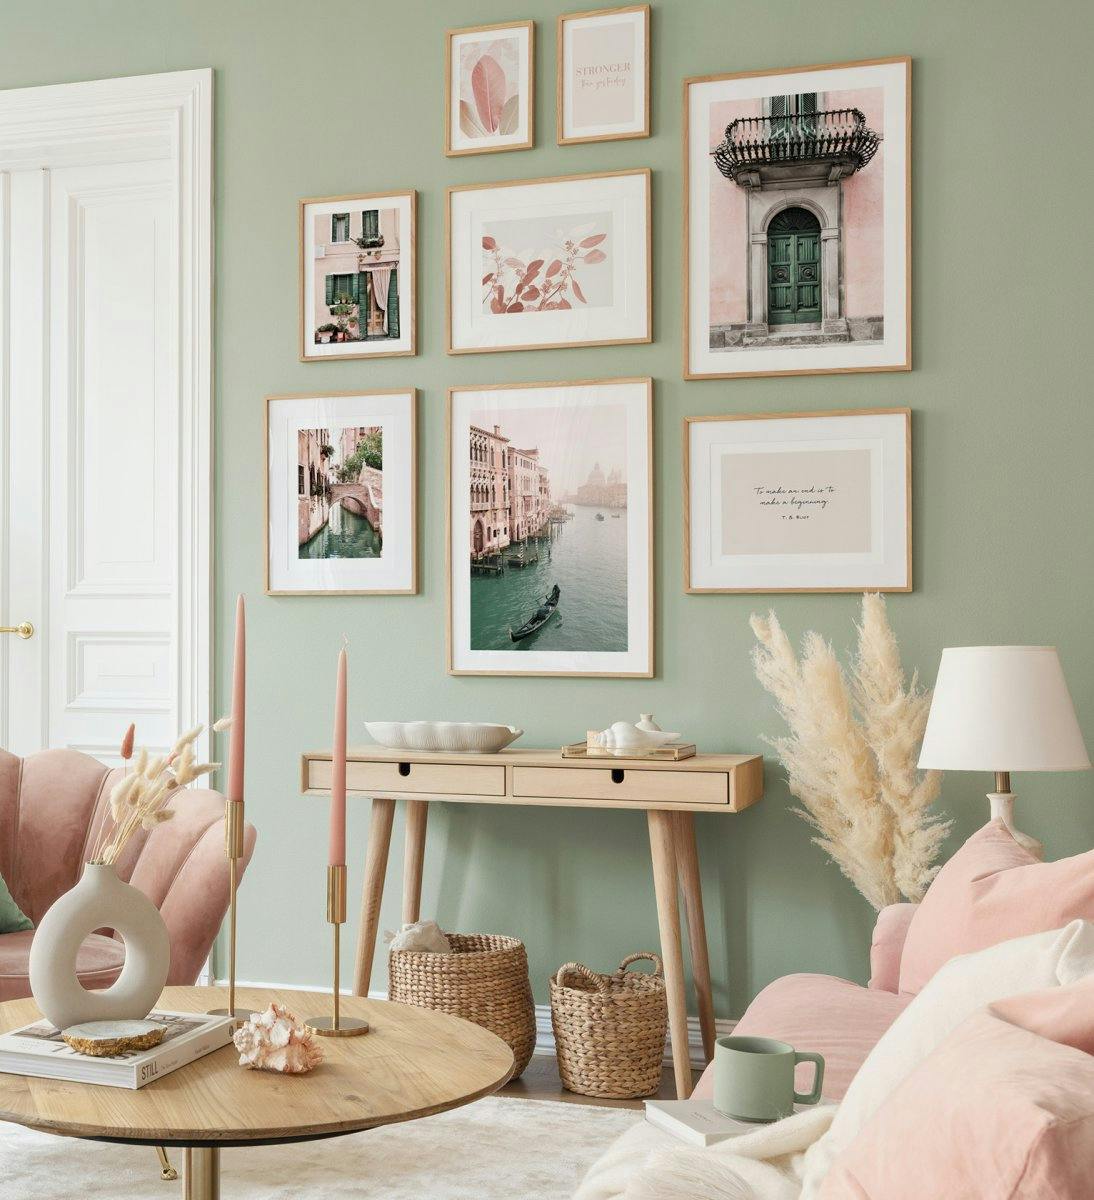 Fotografías en colores pastel creando un espacio juguetón y fresco para la sala de estar